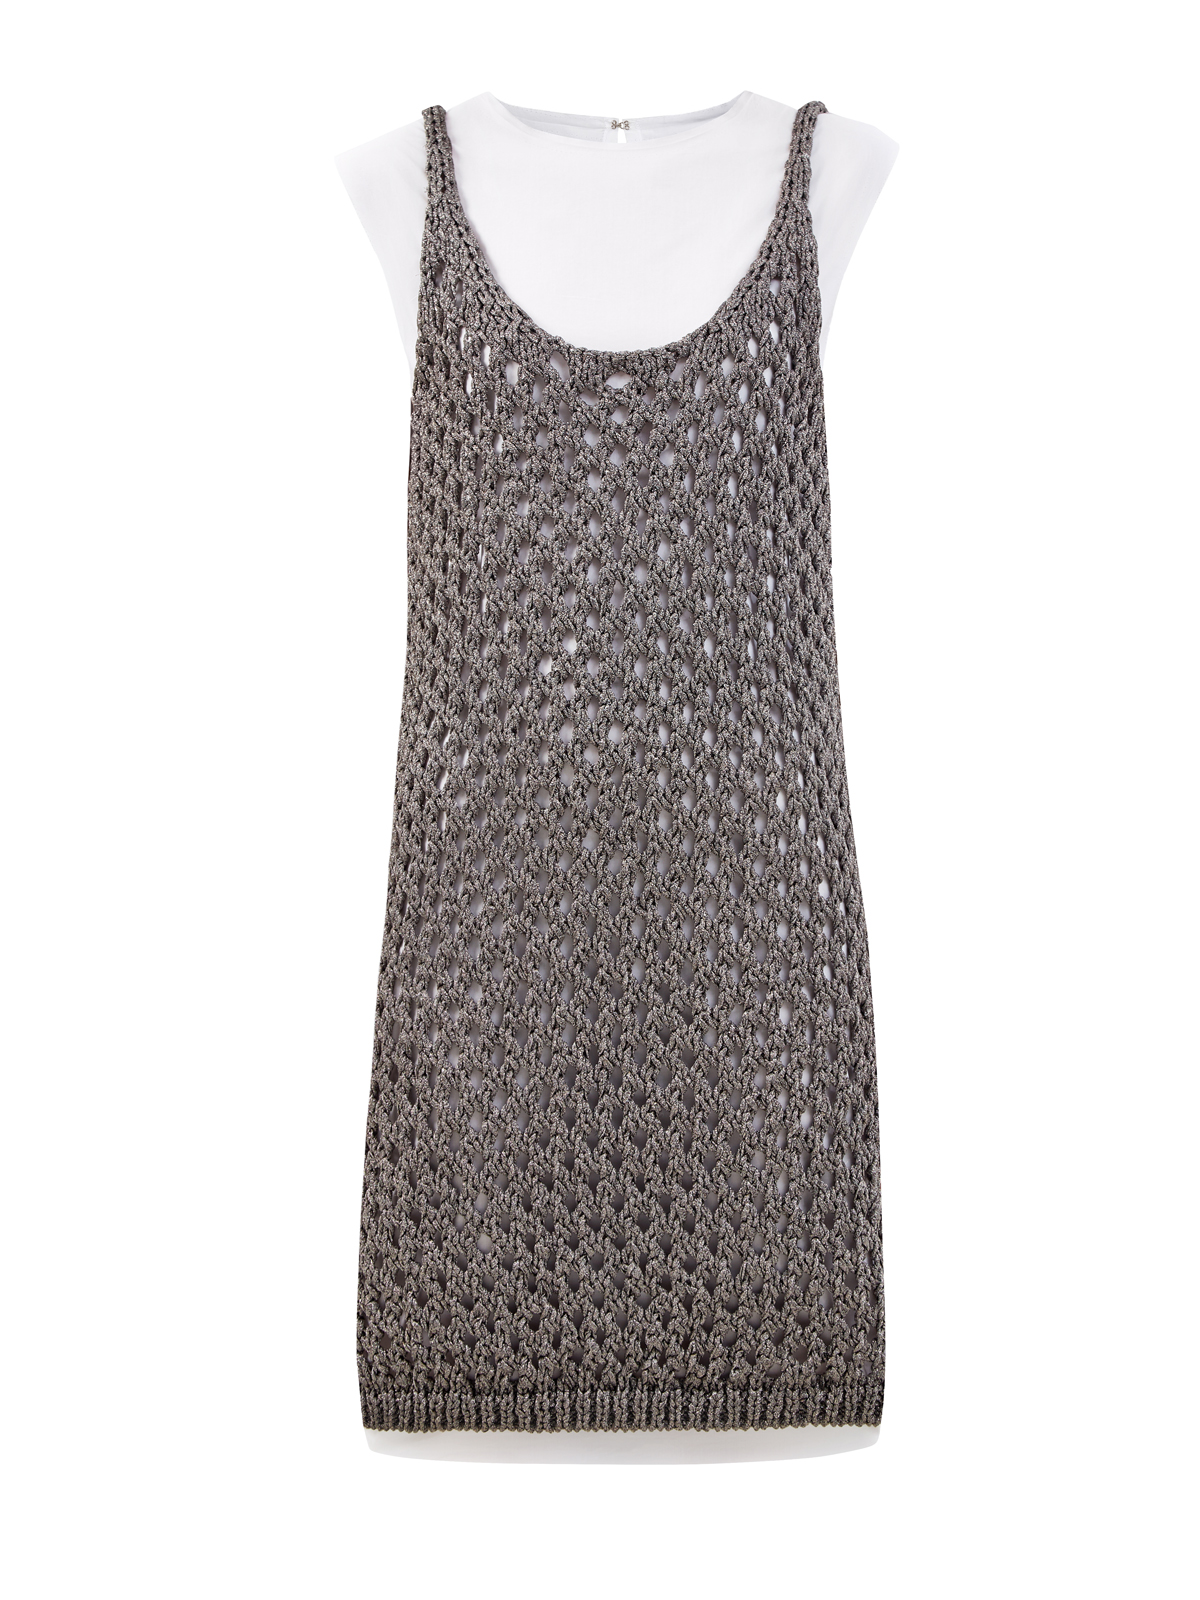 Платье 2 в 1 из металлизированной пряжи крупной вязки FABIANA FILIPPI цвет мульти